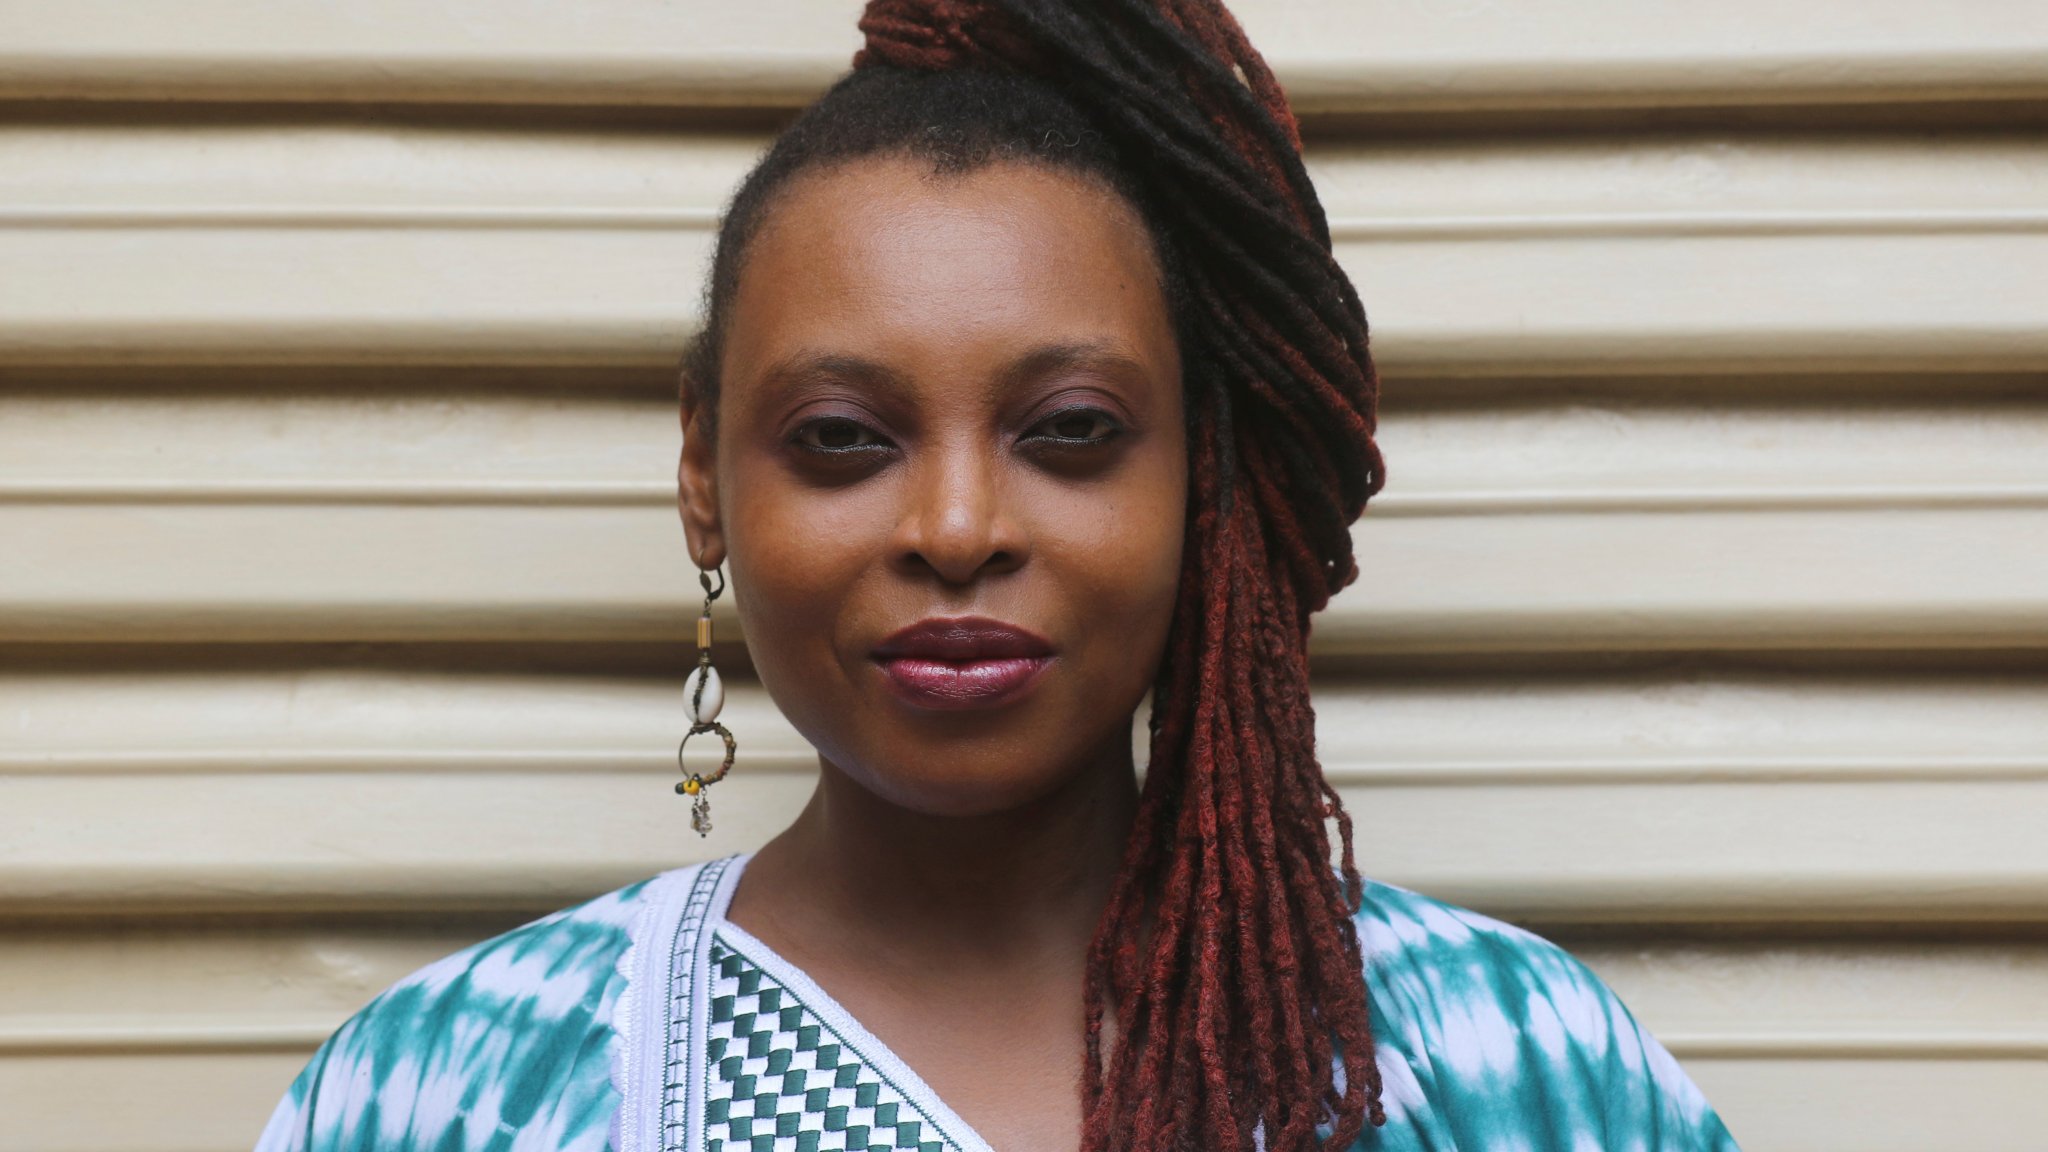 “En littérature, des expériences féminines sont enfin mises à l'honneur” Léonora Miano